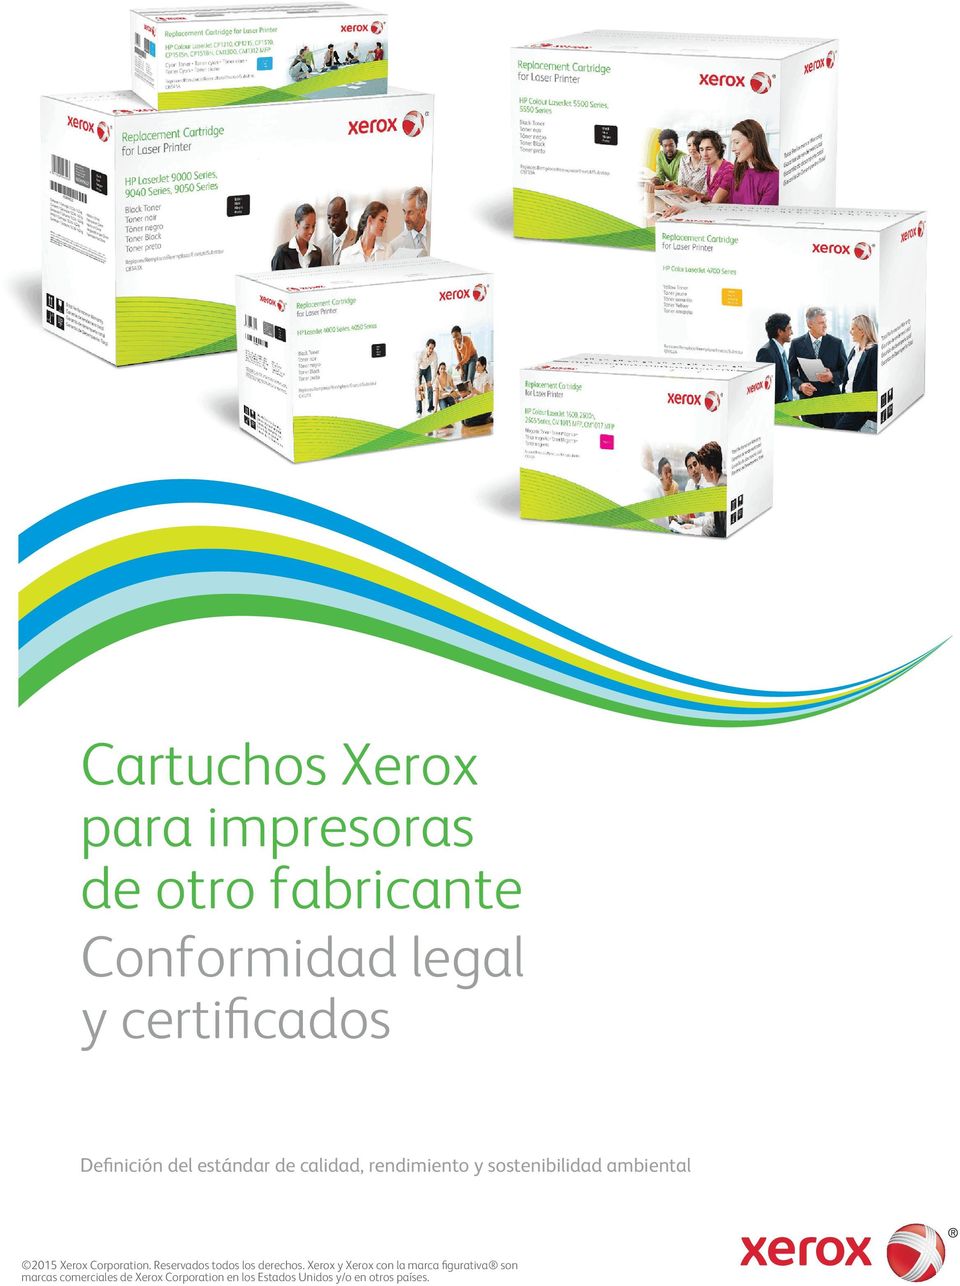 Xerox Corporation. Reservados todos los derechos.